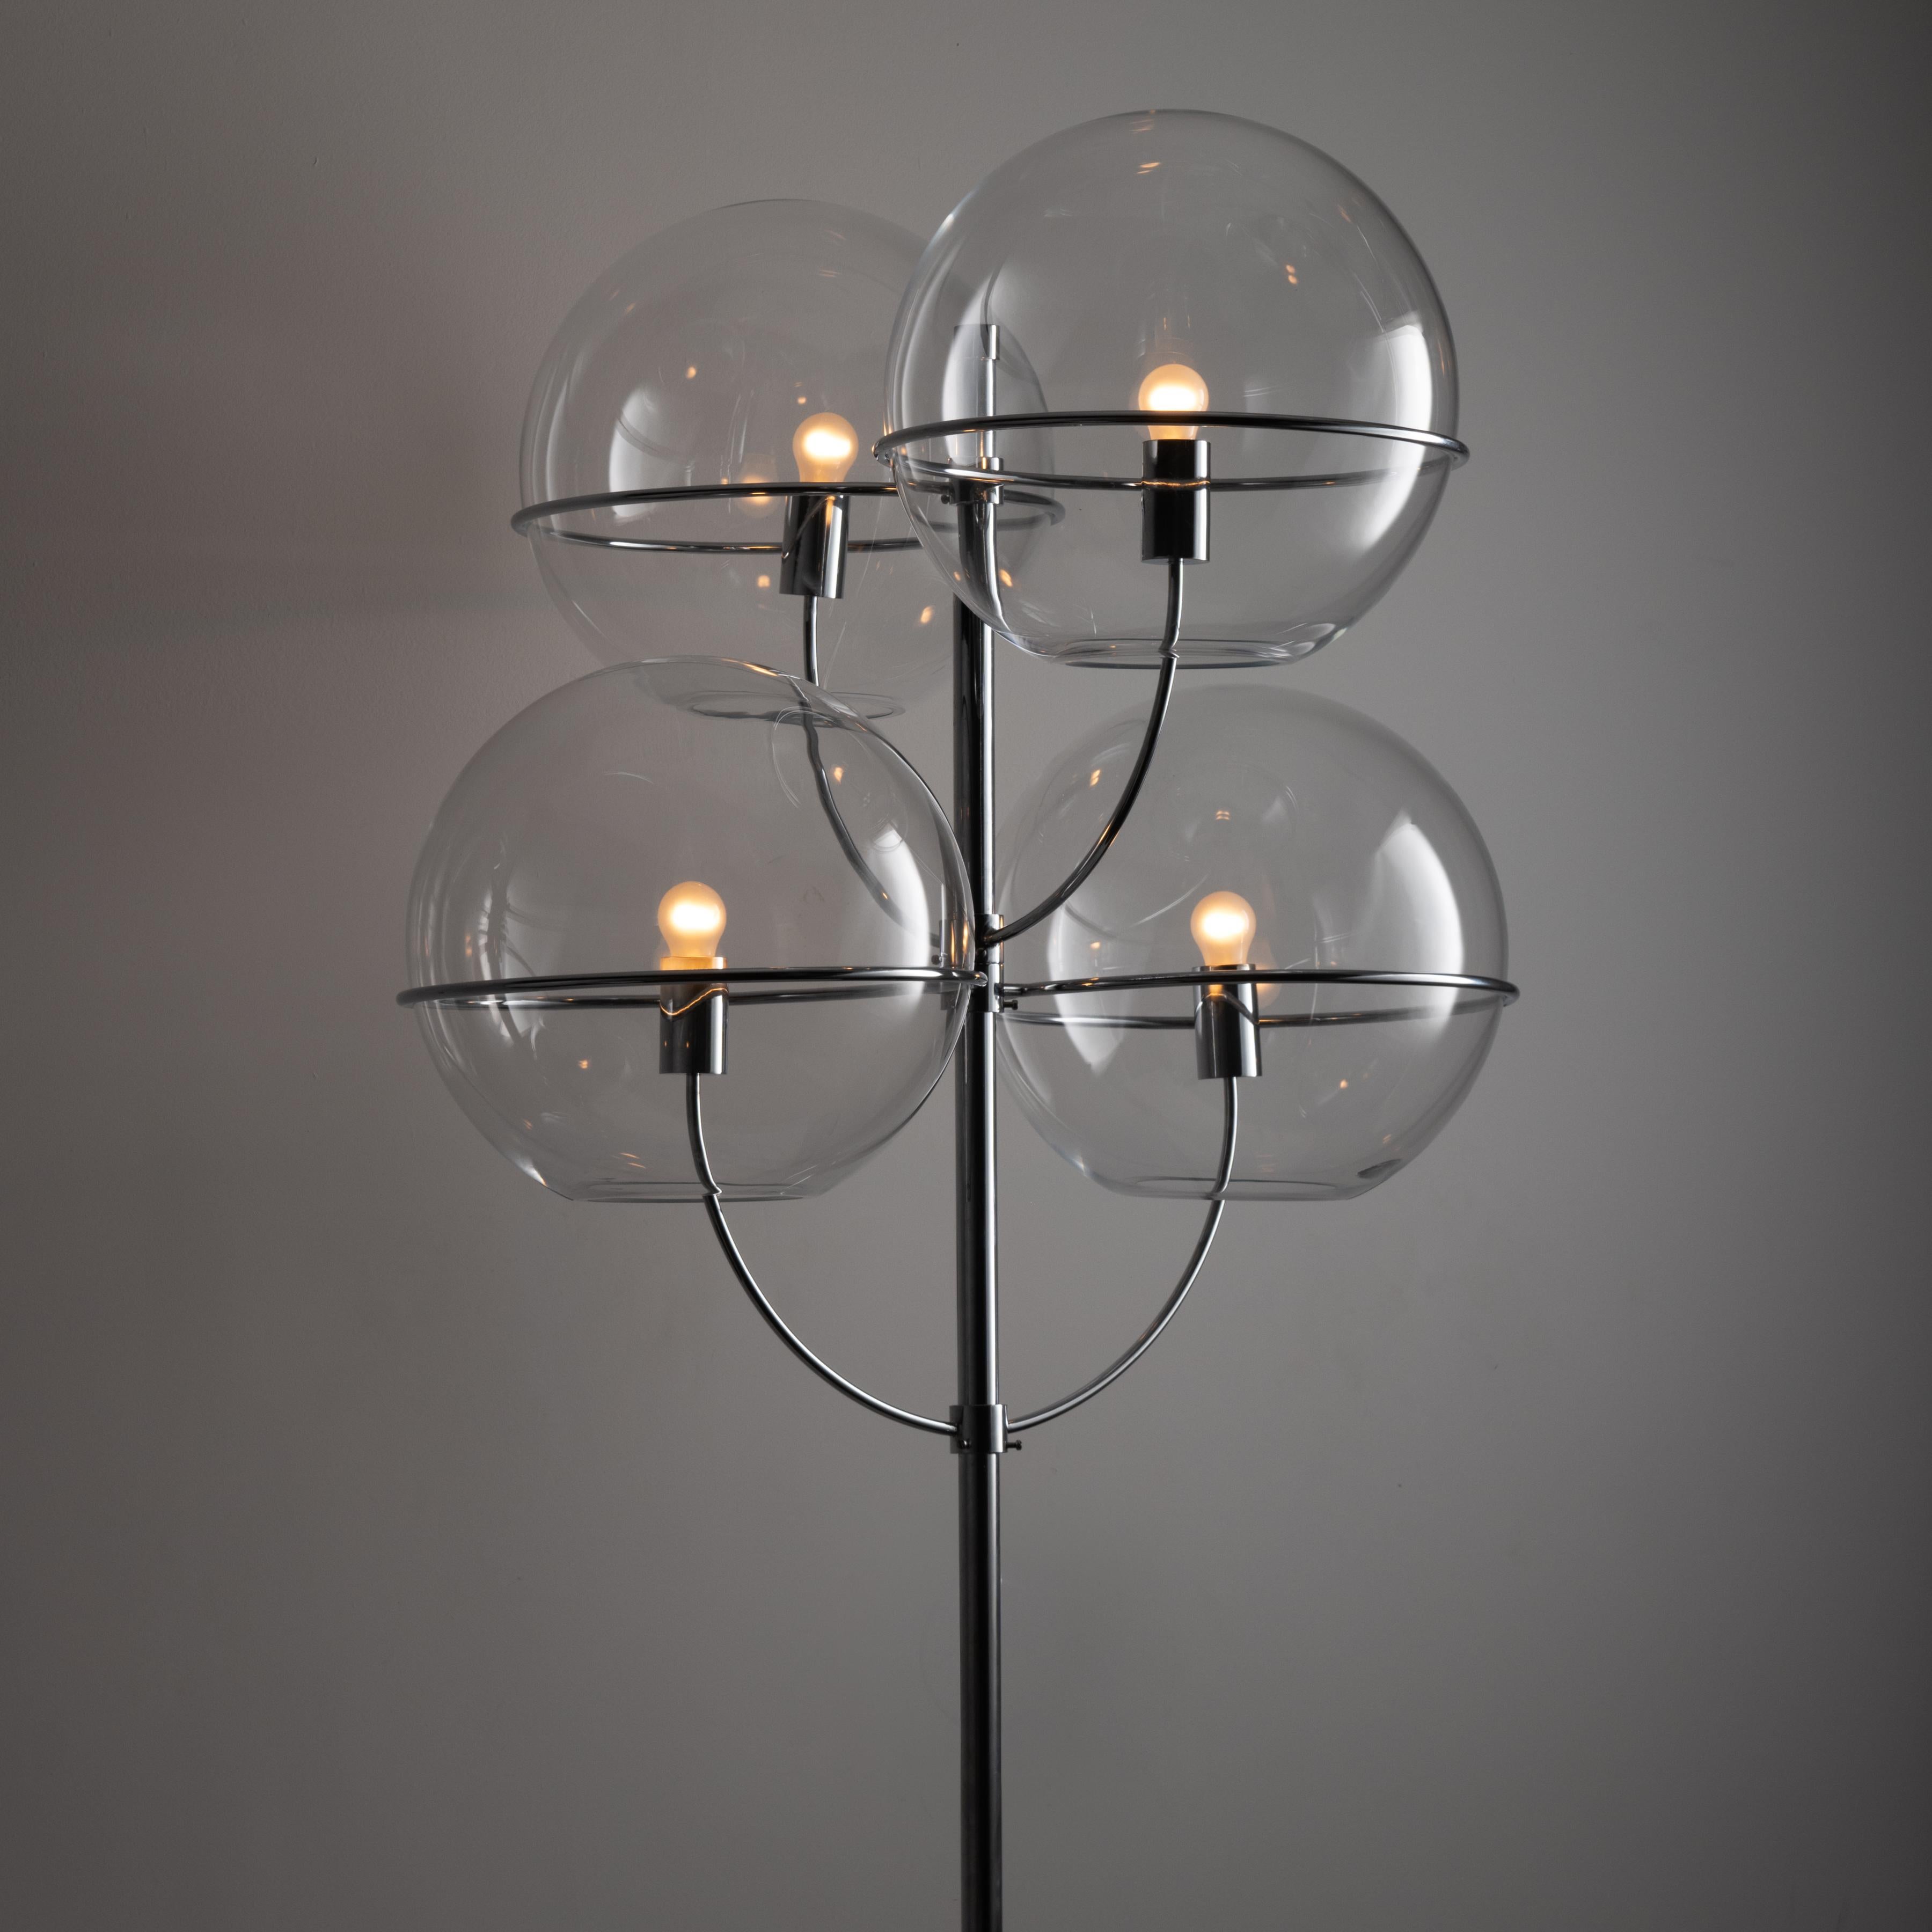 Grand et rare lampadaire 'Lyndon' de Vico Magistretti pour Knoll. Quatre globes en verre clair nichés sur des tiges de branches chromées dans ce lampadaire aux dimensions spectaculaires. La lampe est fixée et mise à la terre par un lourd morceau de